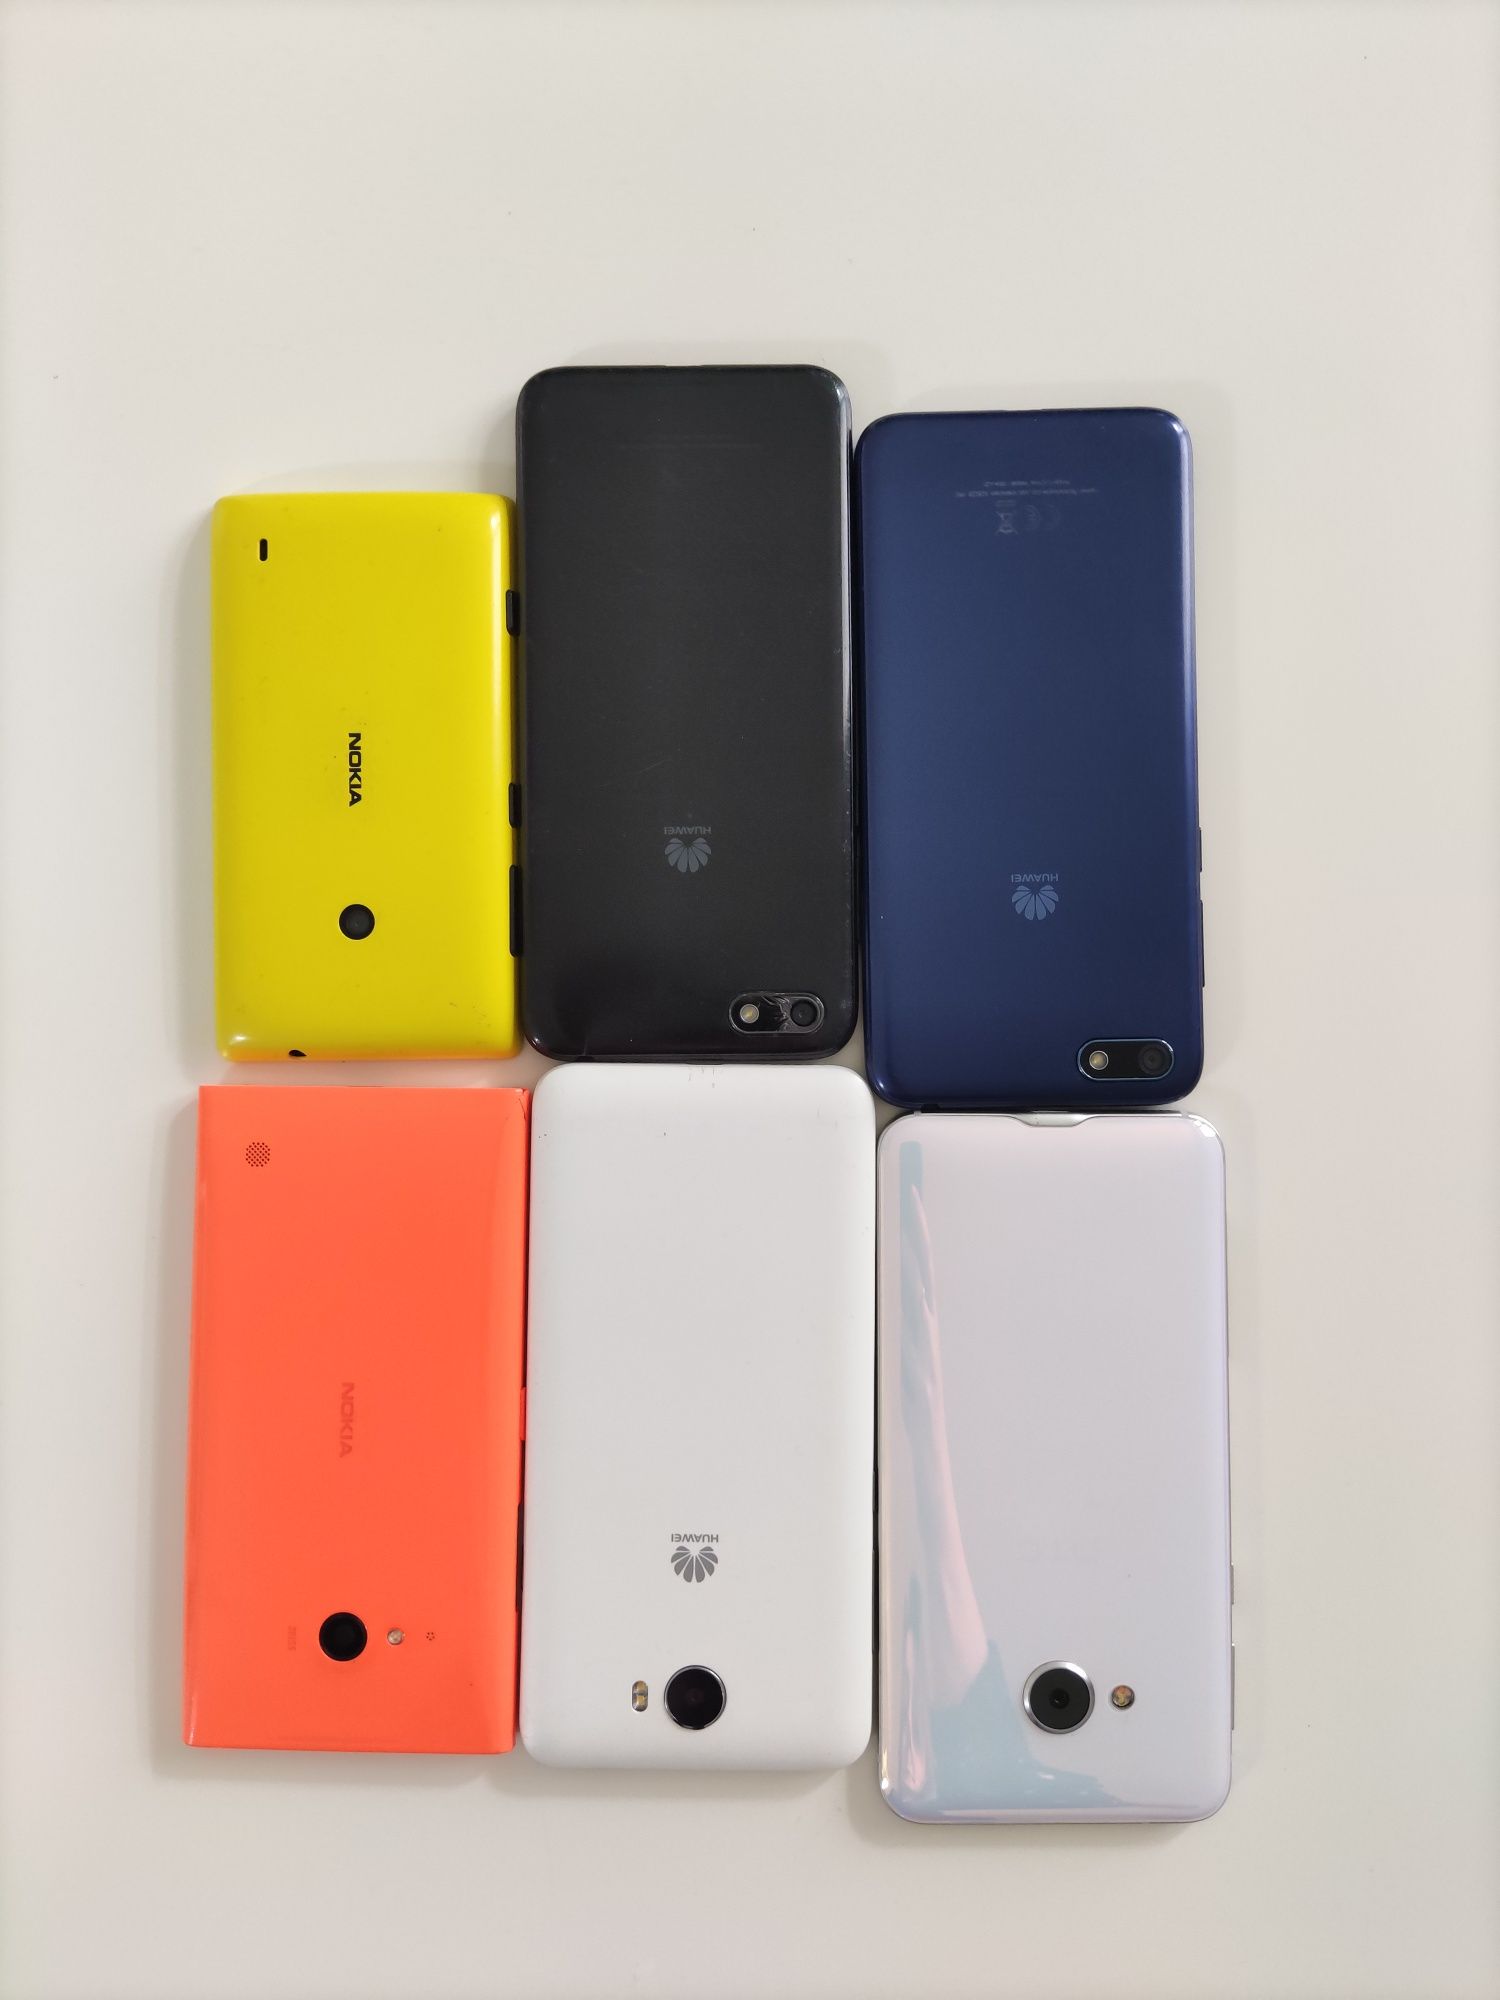 Zestaw 7 telefonów Nokia Huawei HTC